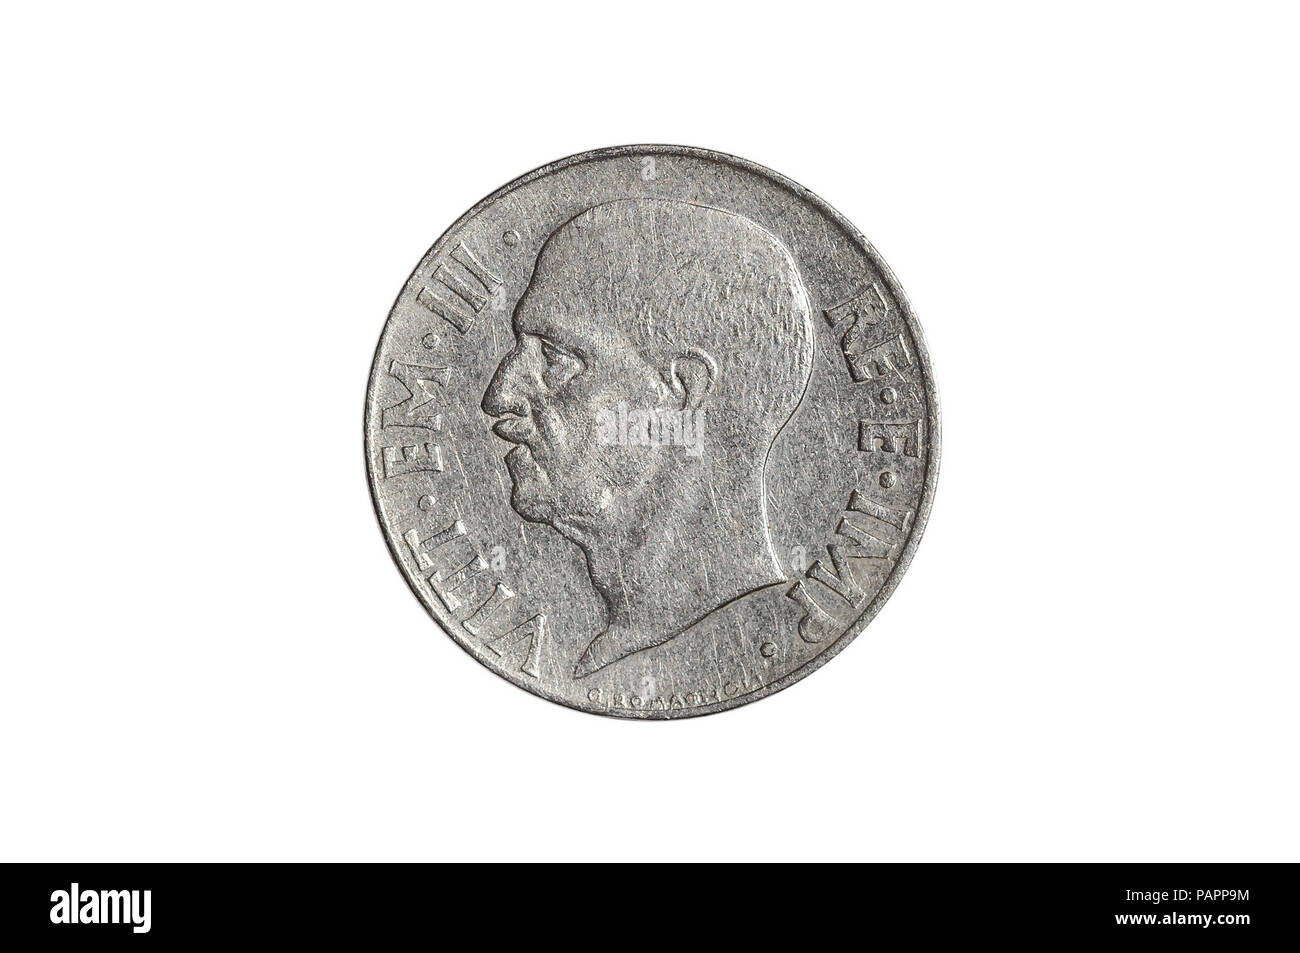 20 centesimi di lira italiana moneta close-up da 1940s Italia, lato testa  con re Vittorio Emanuele III. Isolato su bianco di sfondo per studio.  Raccolta di archiviazione moneta di venti centesimi di